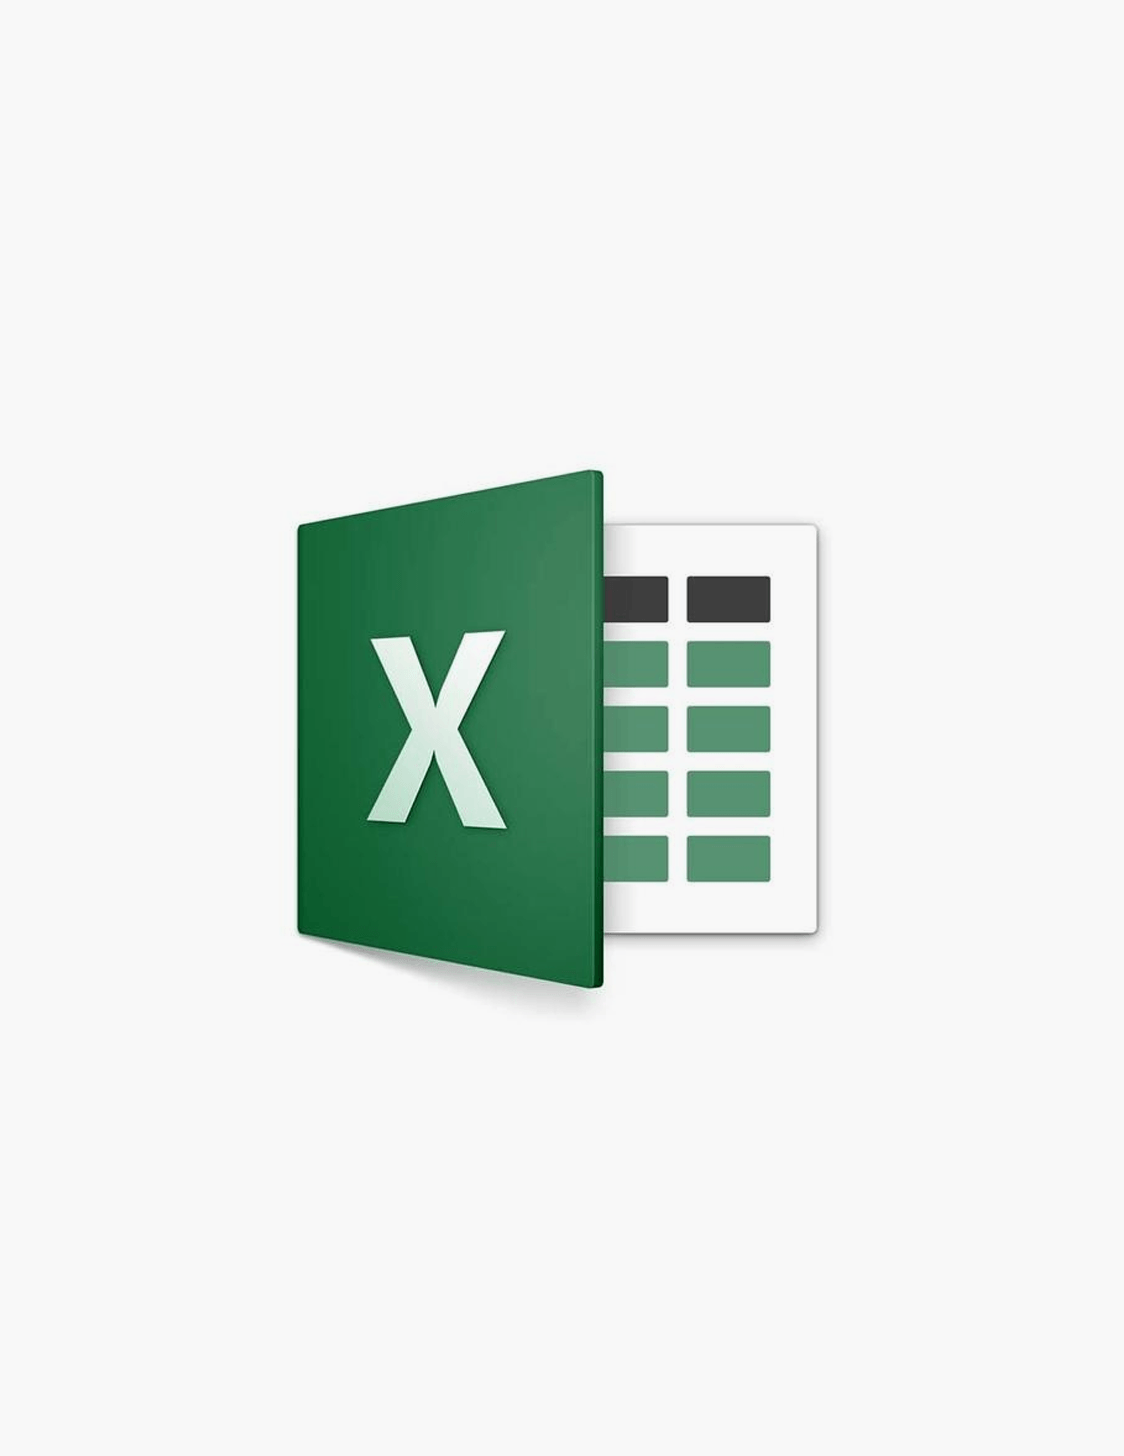 Excel Online Logo